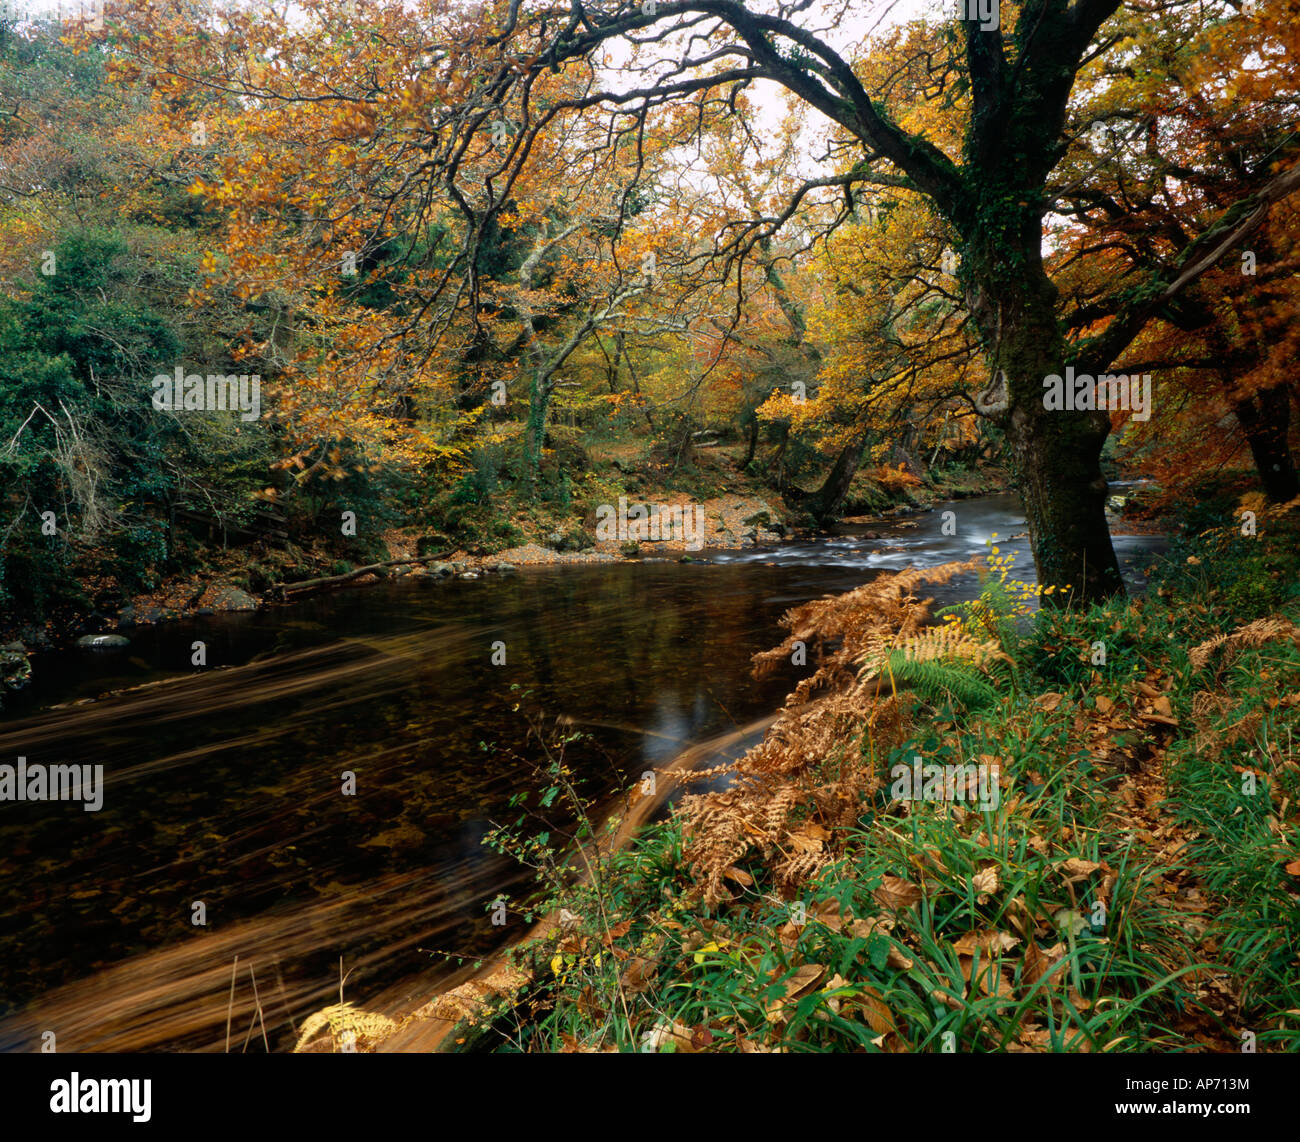 La rivière Dart dans Dartmoor National Park, près du nouveau pont de l'automne. Holne, Devon Banque D'Images